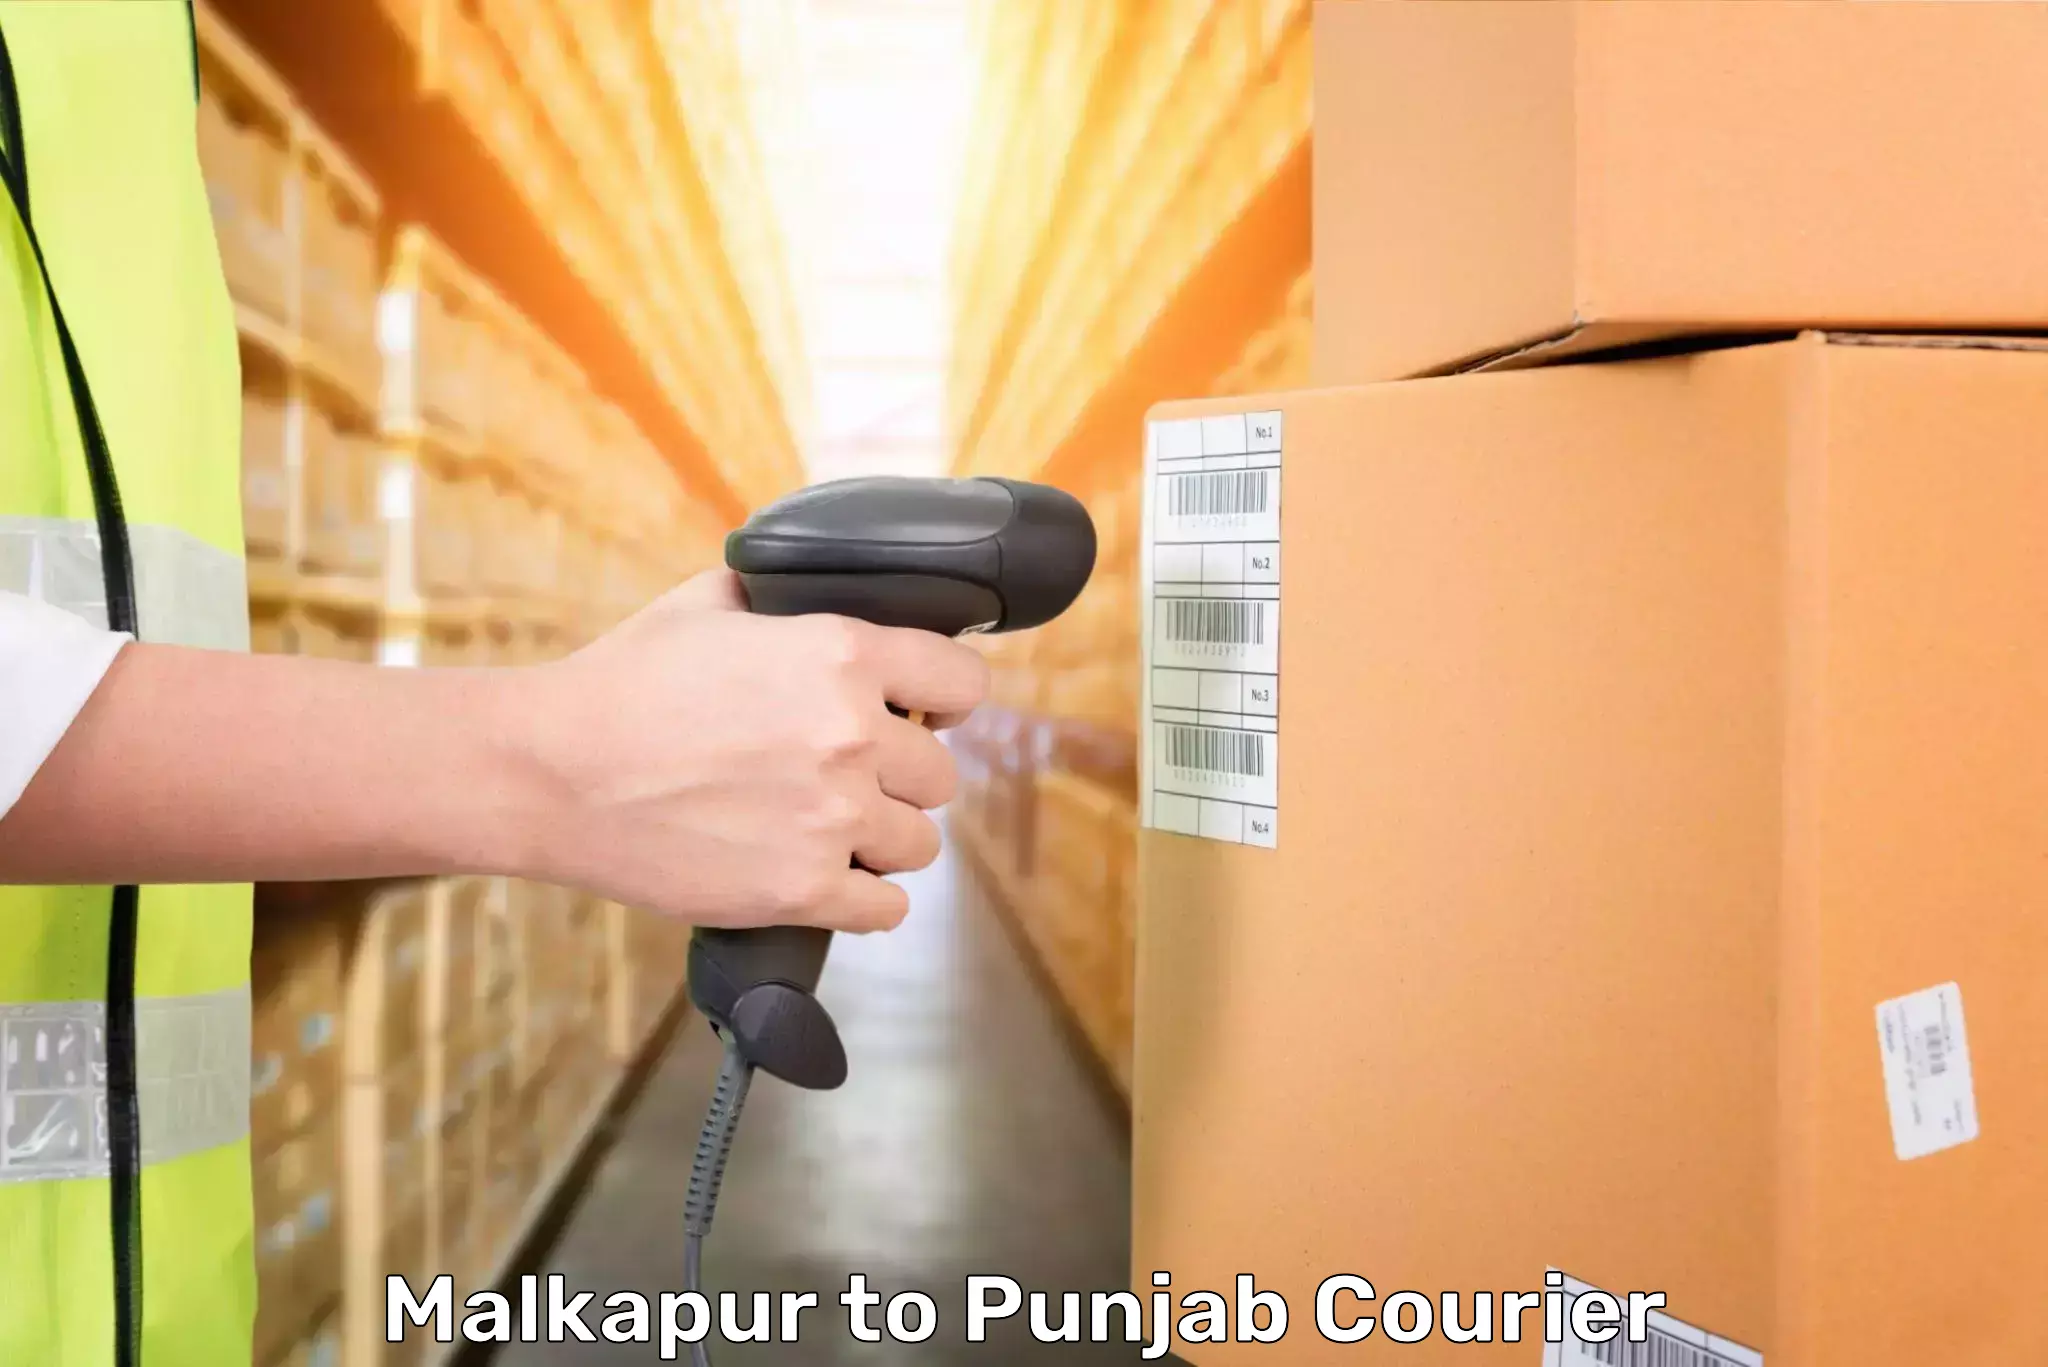 Baggage courier optimization Malkapur to Punjab